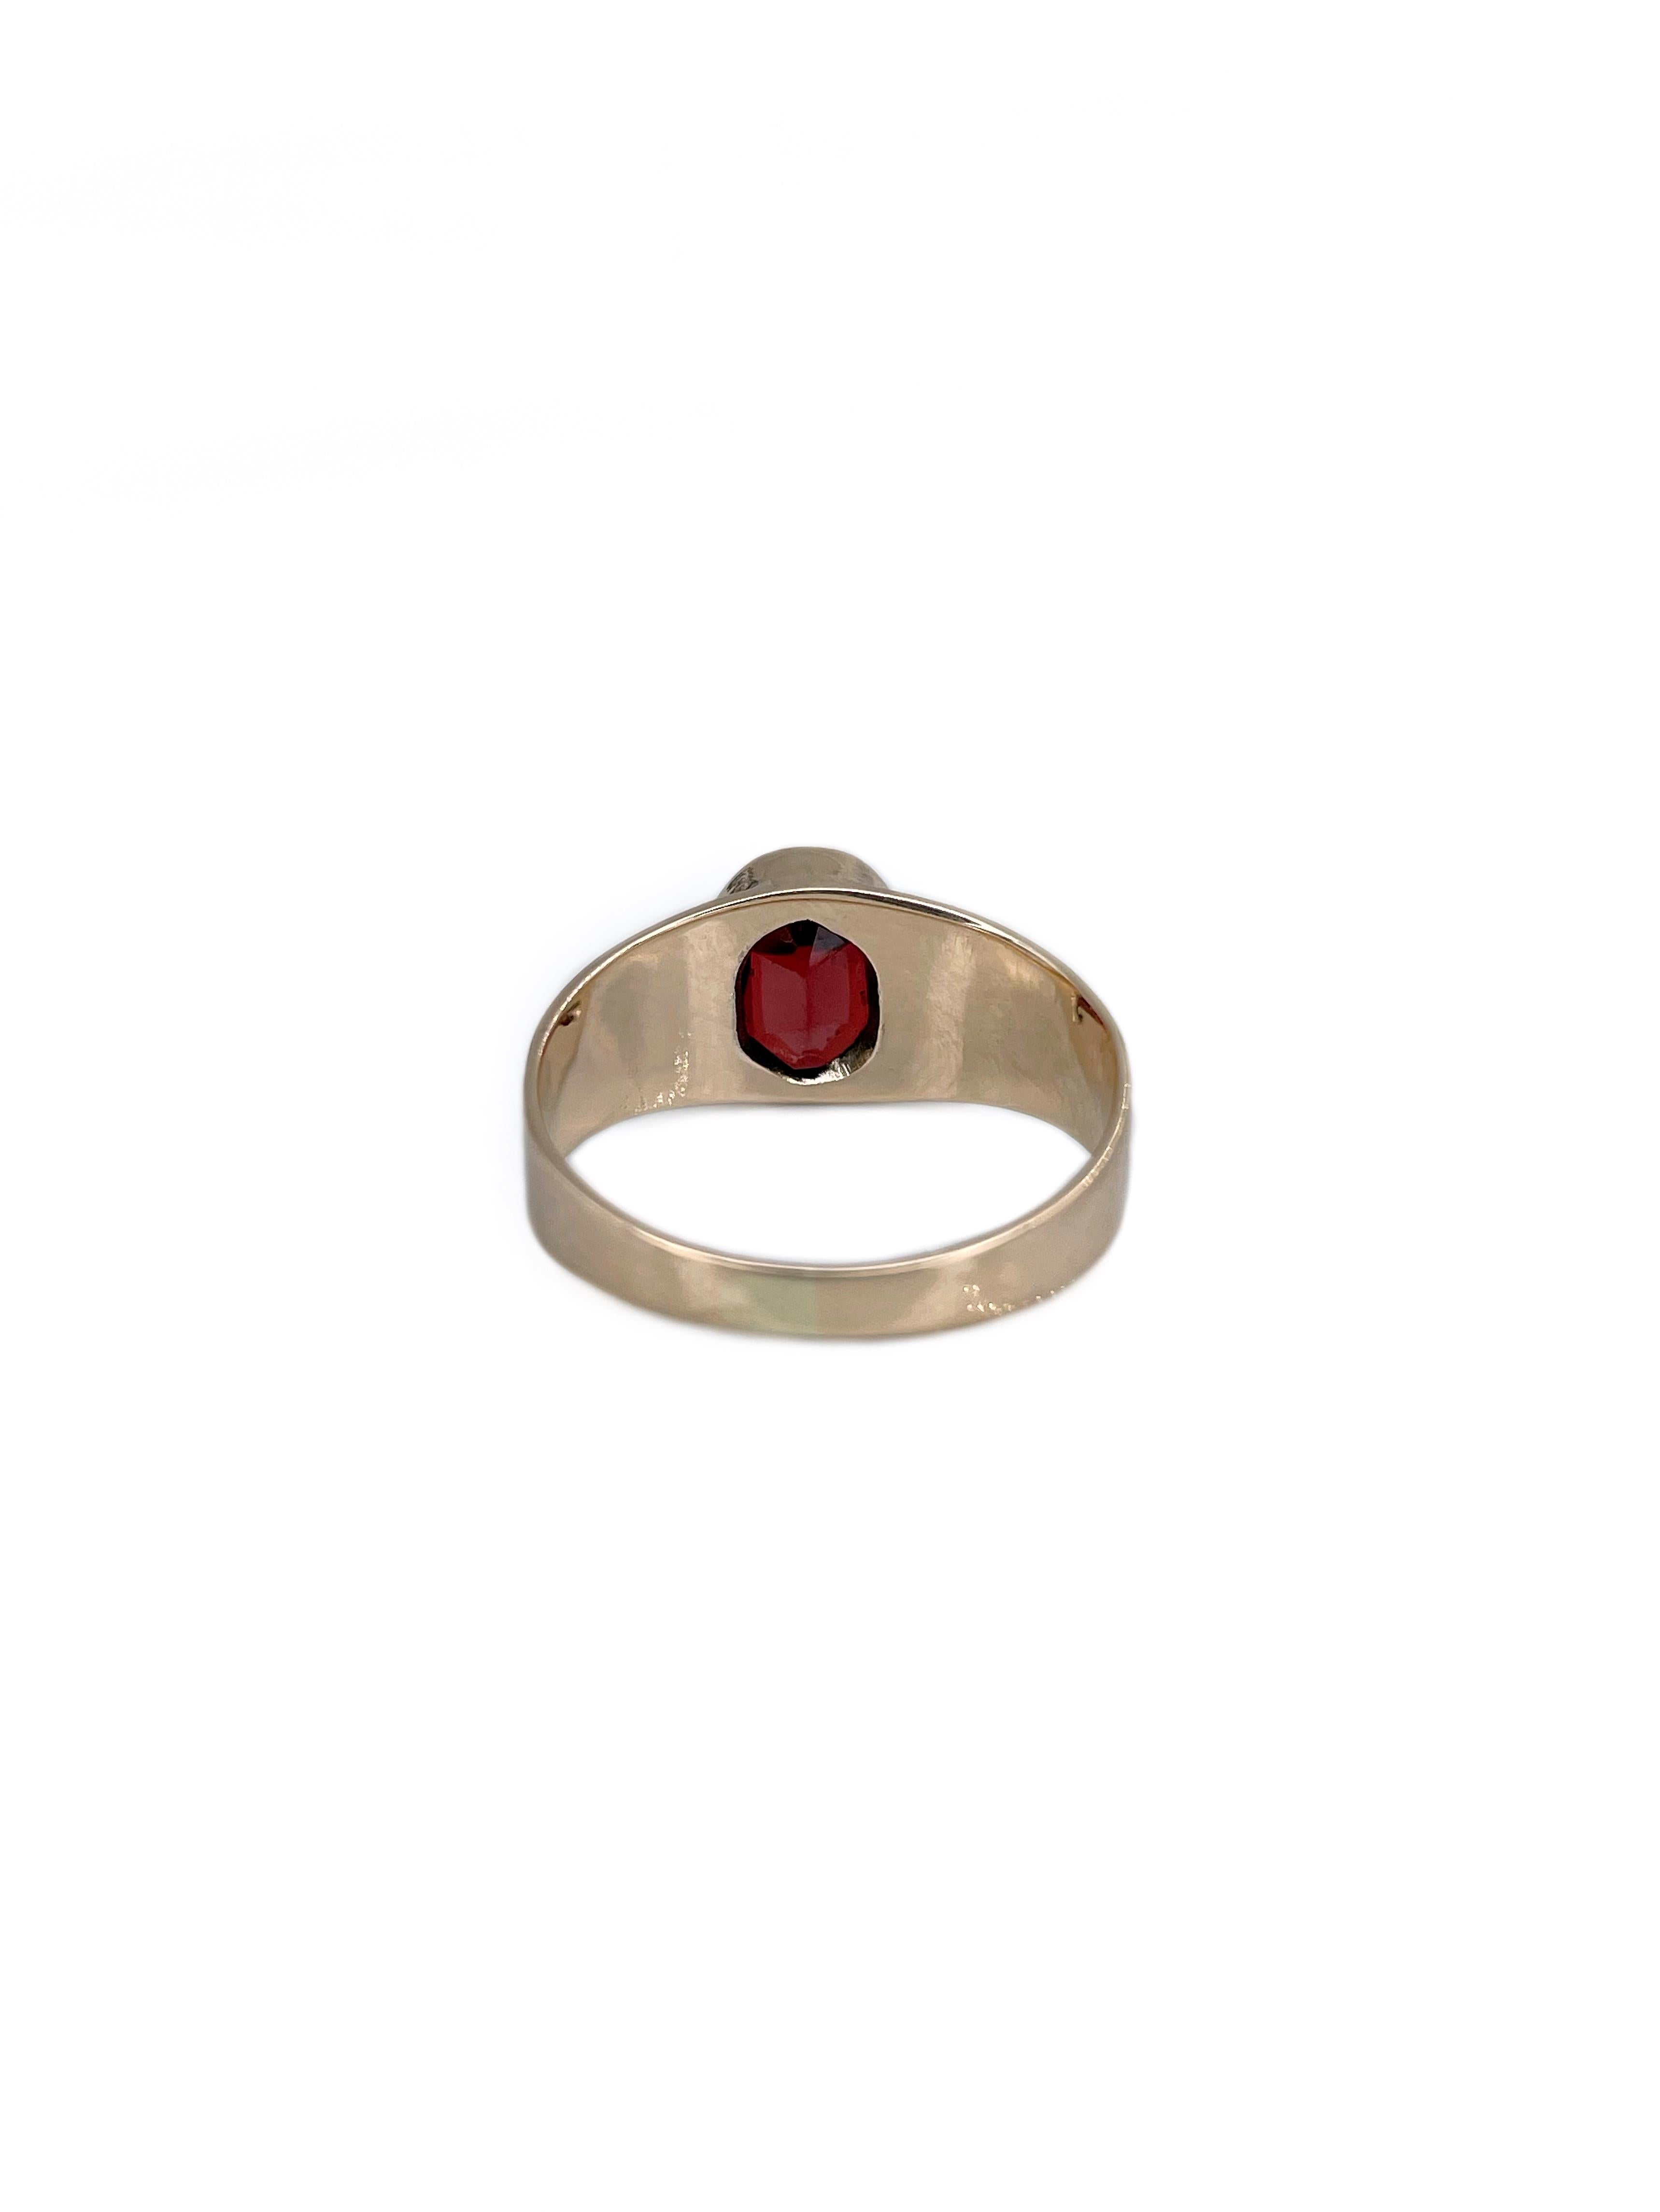 Women's or Men's Mid Century 14 Karat Yellow Gold Rose Cut Garnet Signet Ring